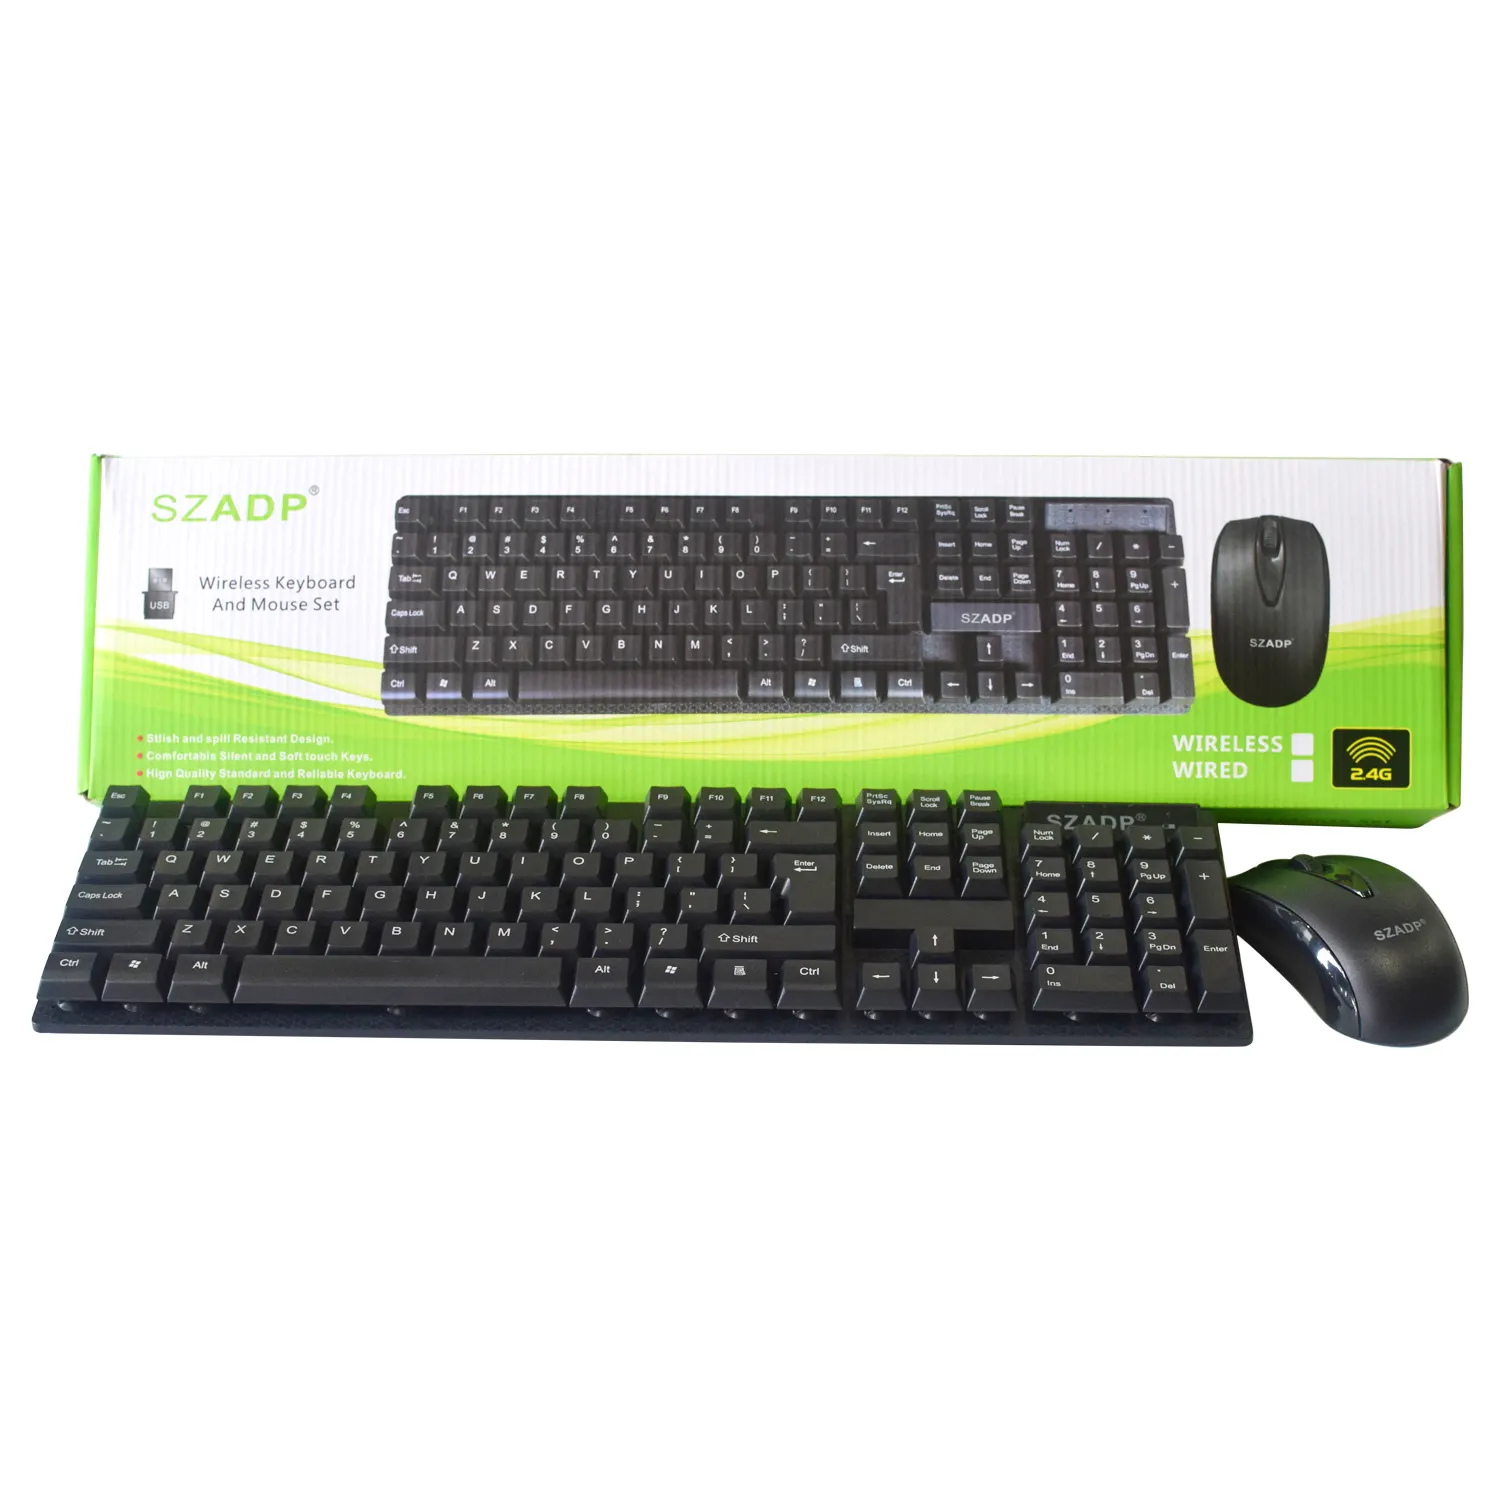 SZADP Brand wireless wired Keyboard OEM Keyboard